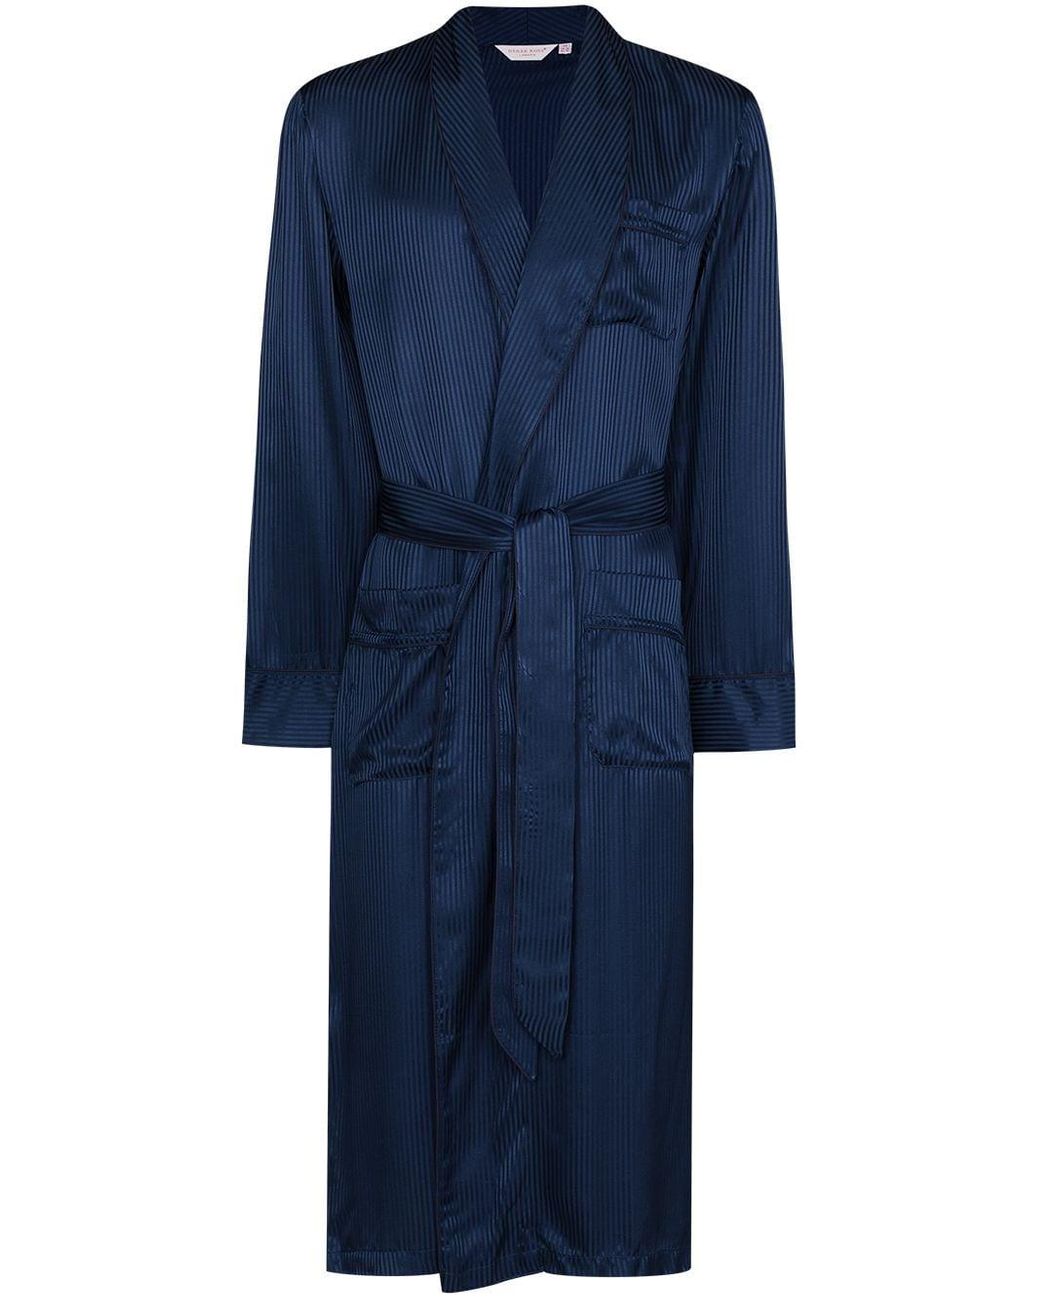 Derek Rose Tonal Pinstripe Silk Robe in Blue for Men - Lyst